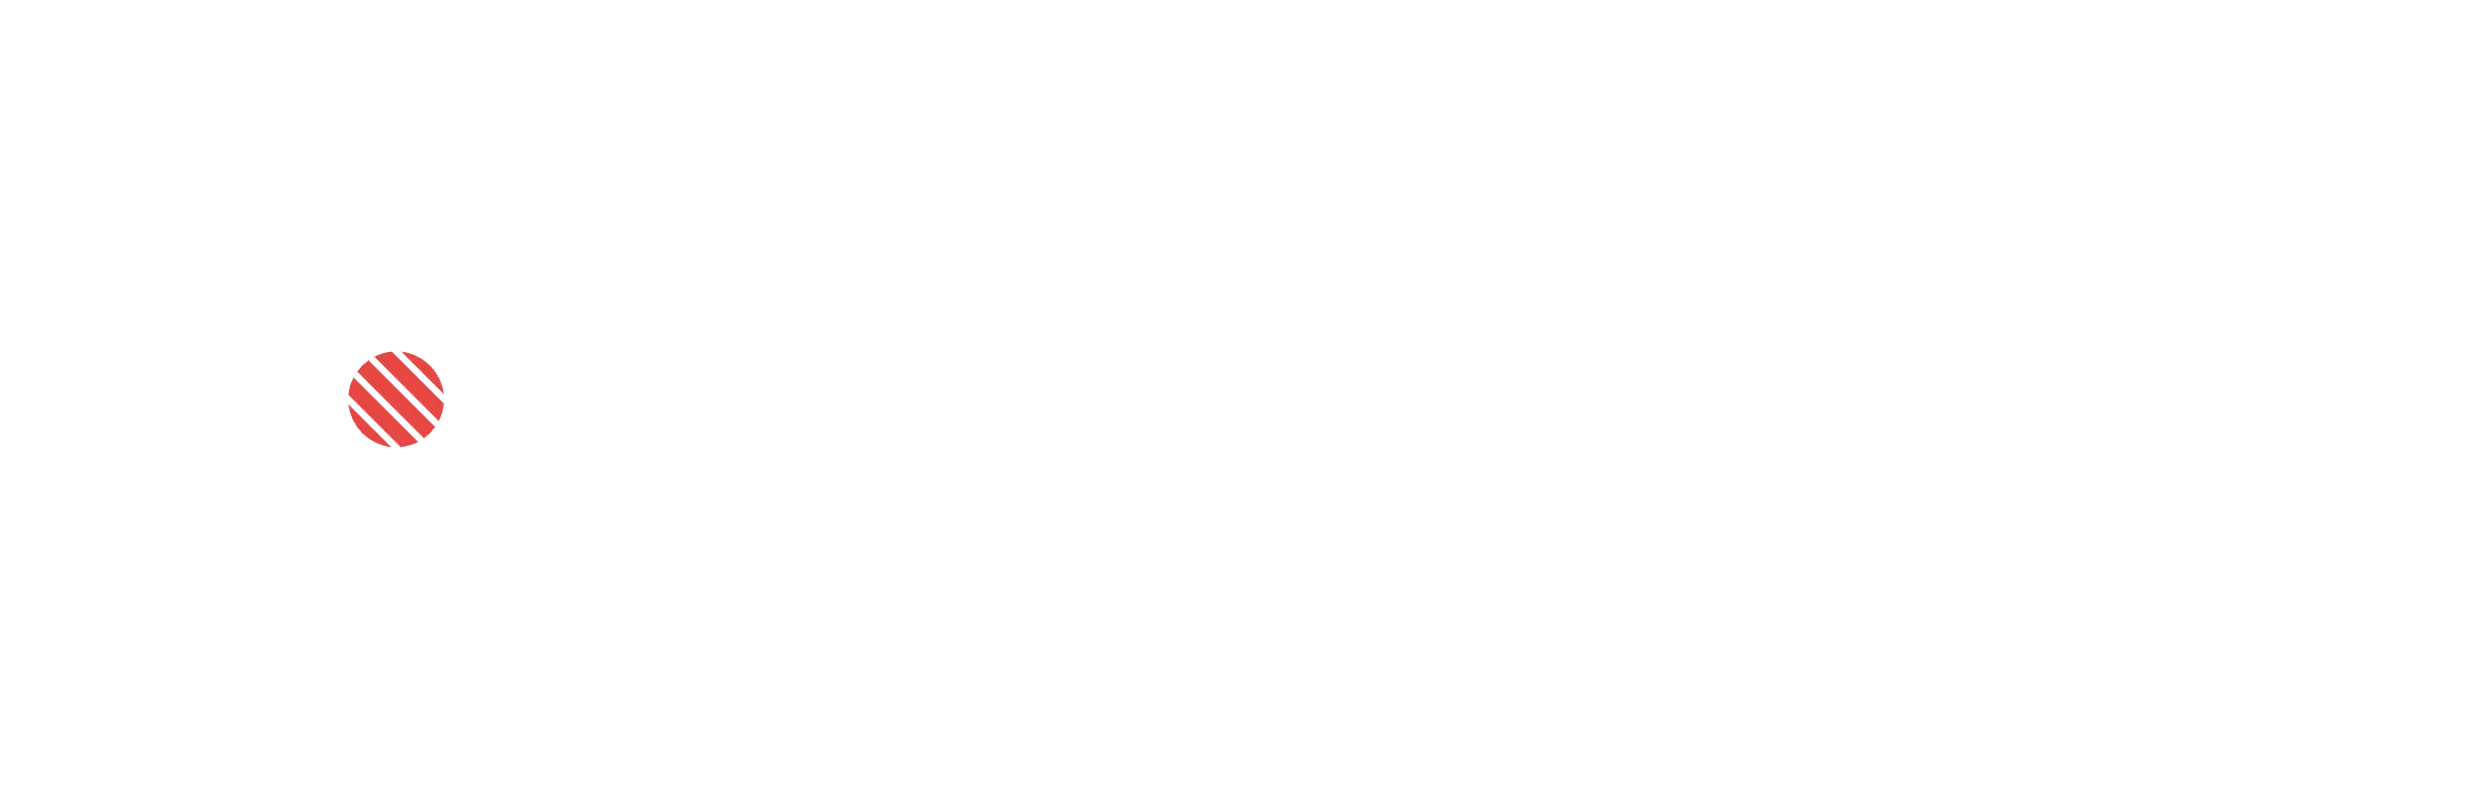 Sushi Mania Promo Codes 